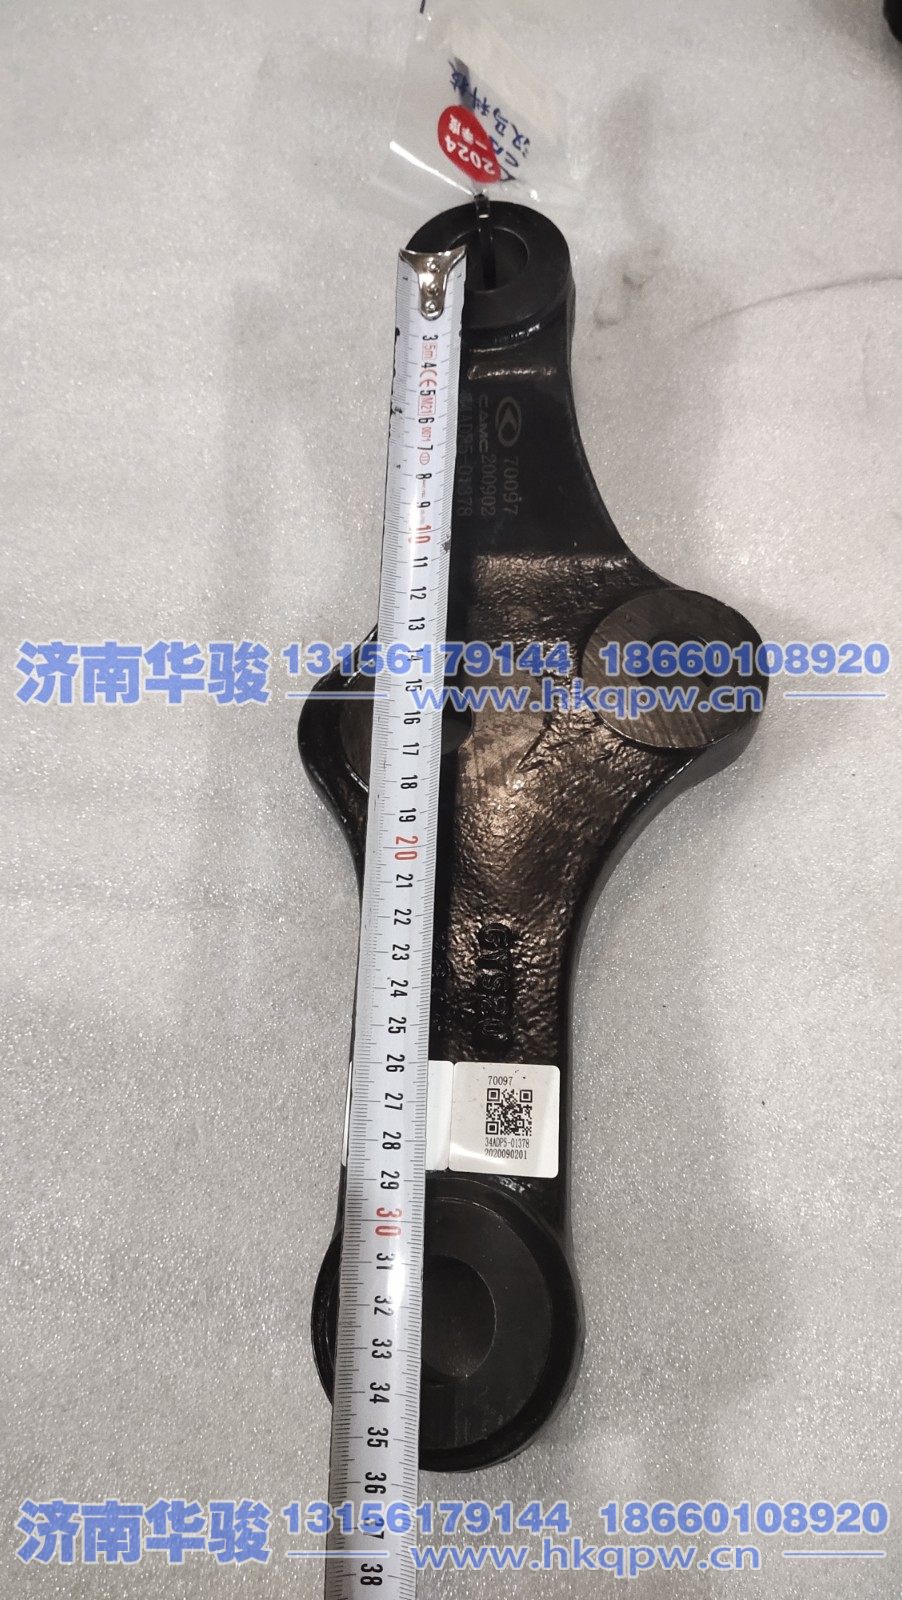 34ADP5-01378,中间垂臂,济南华骏汽车贸易有限公司